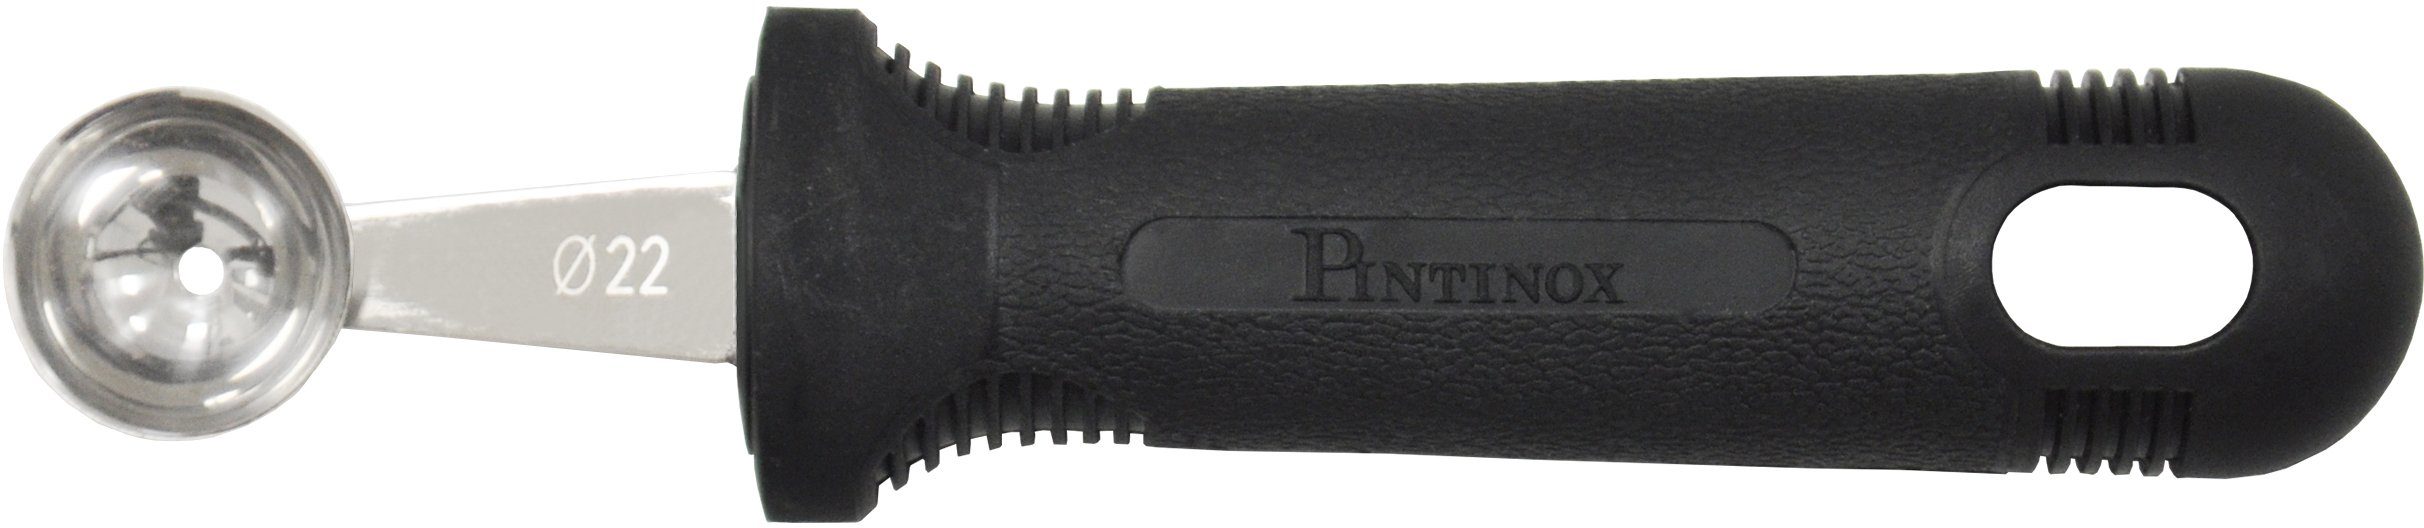 Kugelausstecher und 30mm PINTINOX Professional, 25mm Melonenausstecher, 22mm,